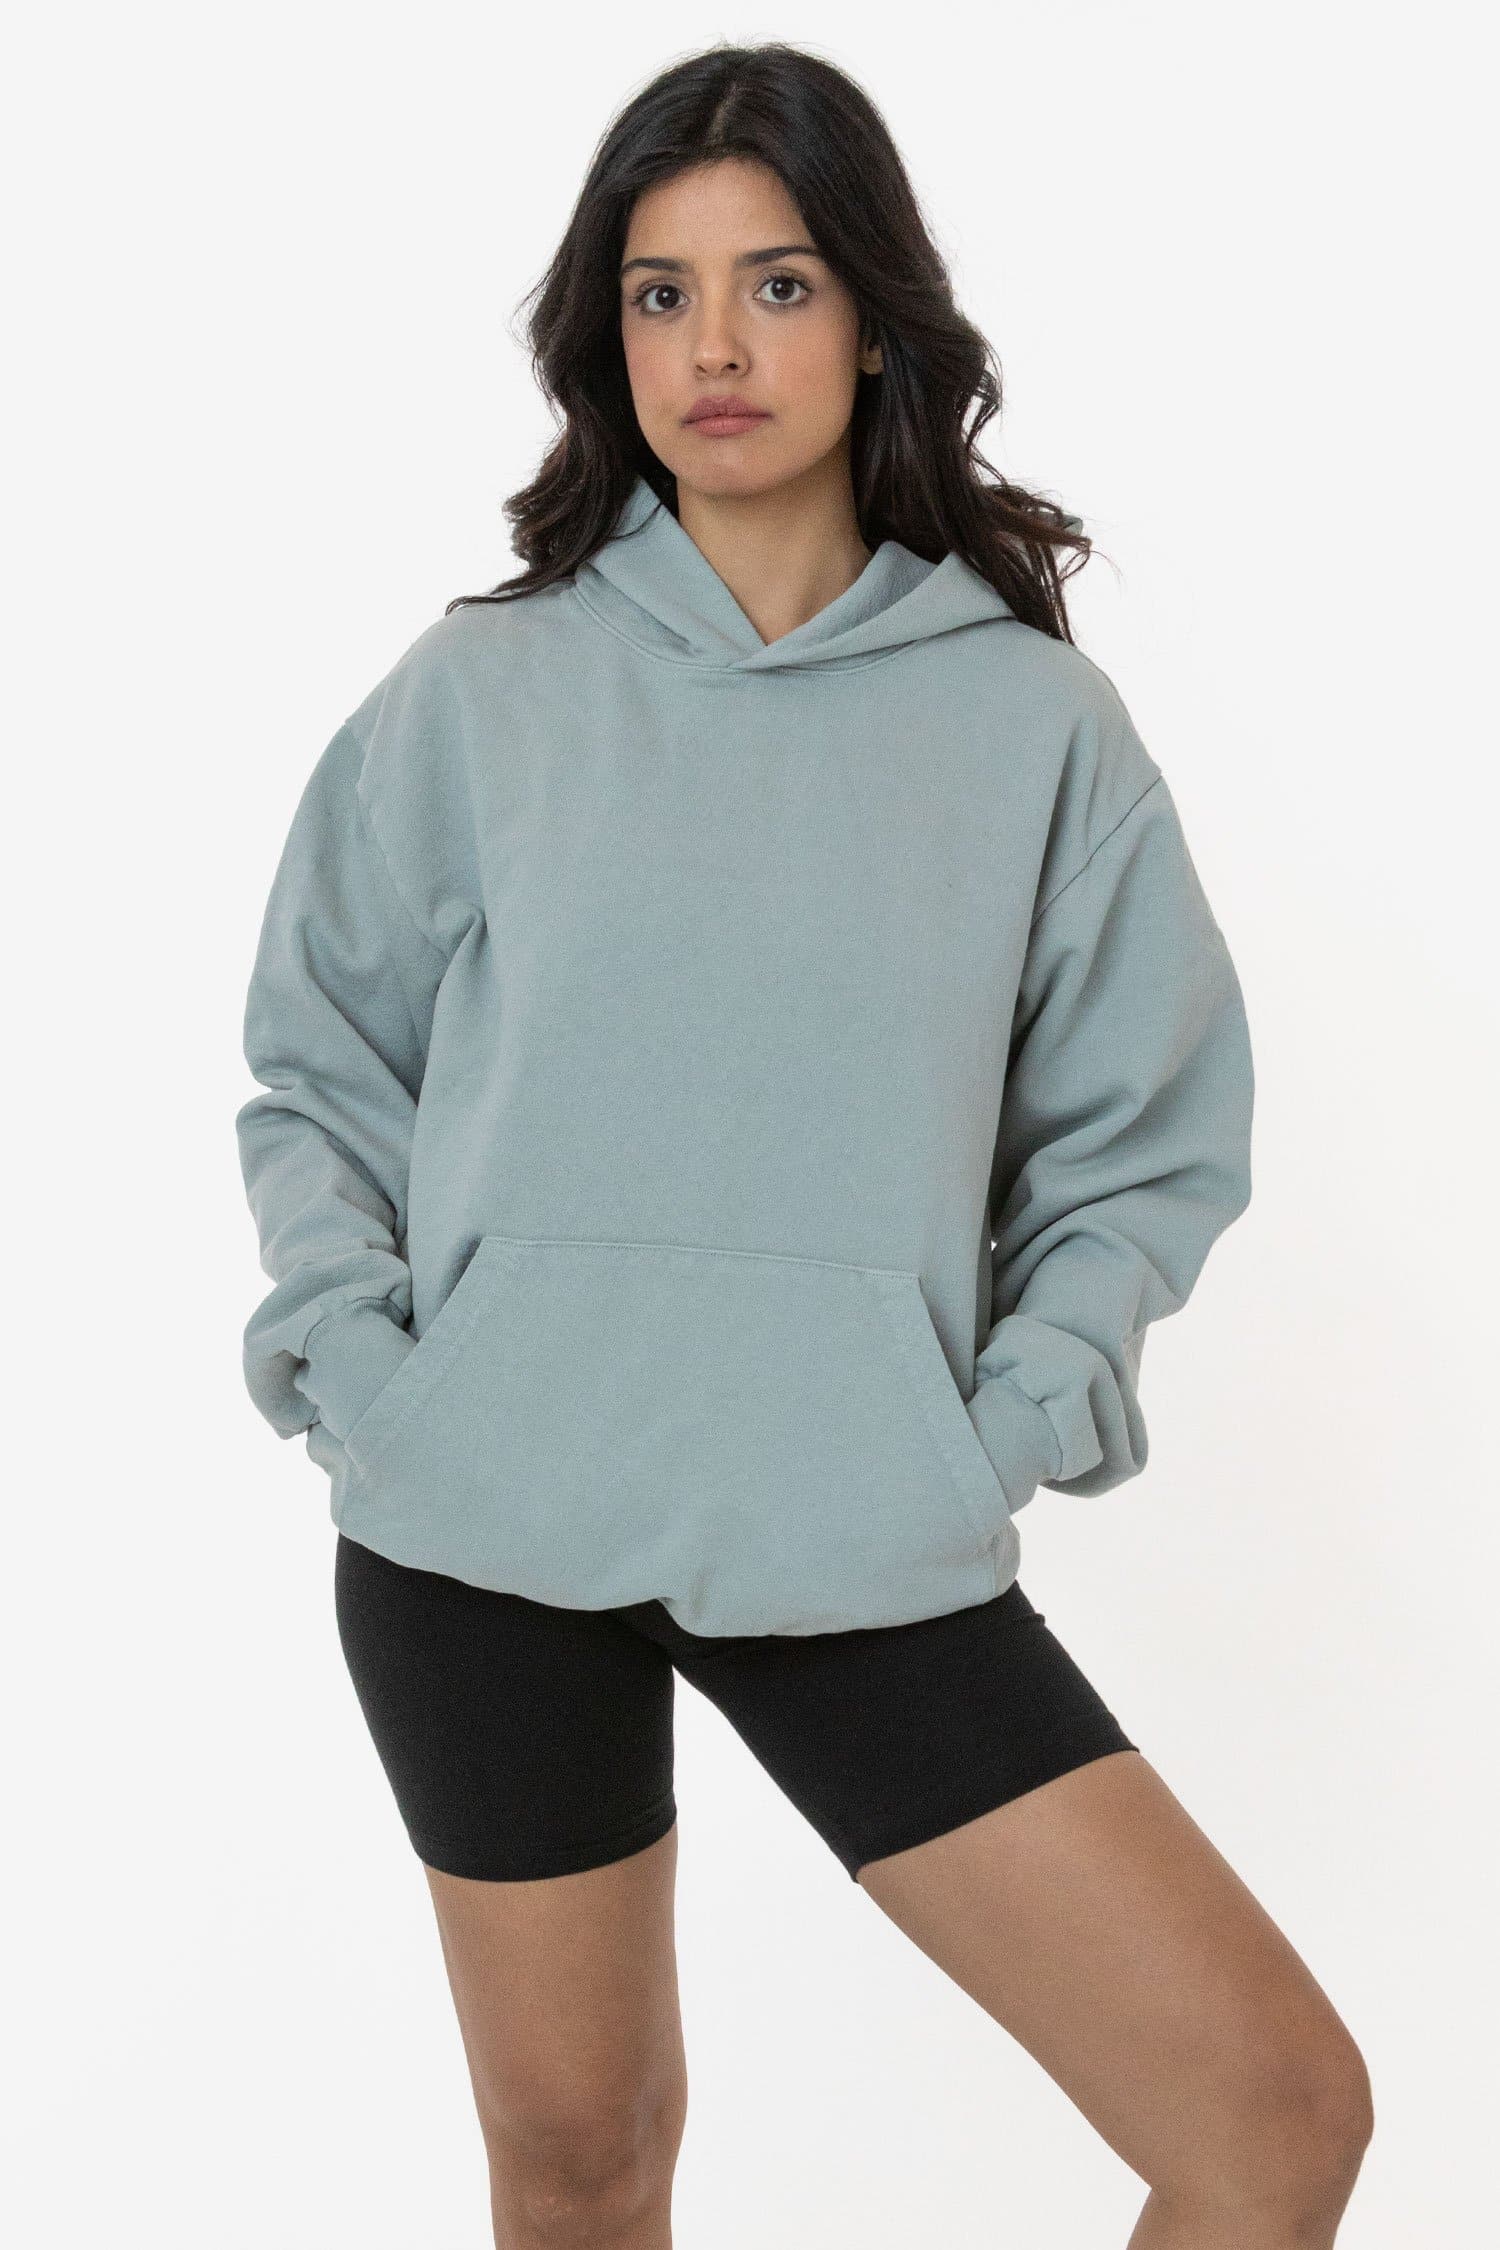 14 Oz. Garment Dye Heavy Fleece Stringless Hoodie  LA Apparel – Mona  T-Shirt x A2Z Wholesale Apparel